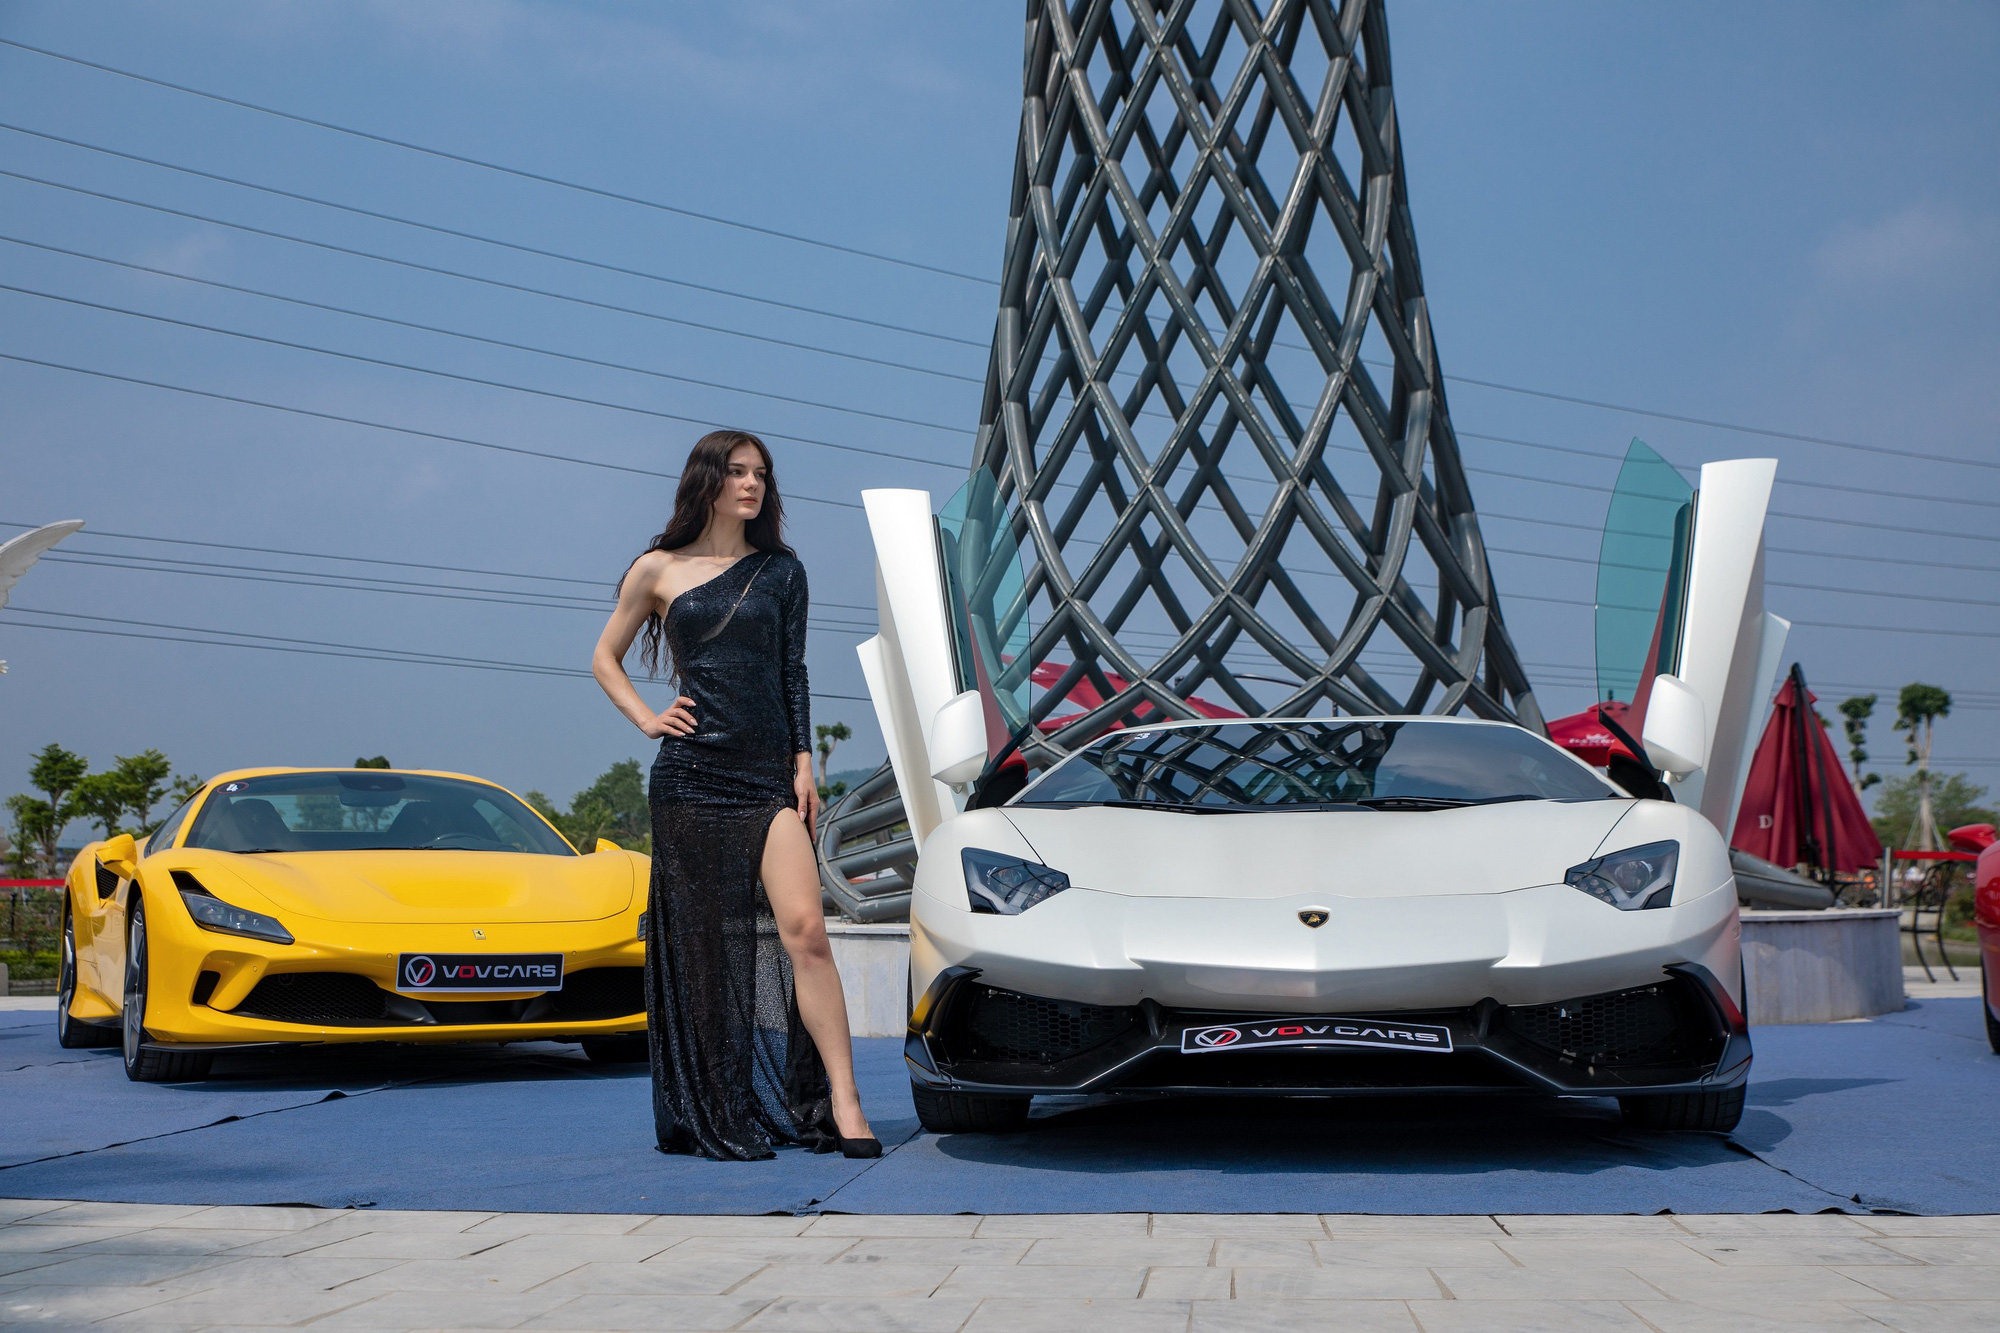 Triển Lãm Siêu Xe Trăm Tỷ Của Vov Cars Tại Thái Nguyên - Mở Màn Ấn Tượng  Cho Họp Báo Sơ Khảo Miss World Vietnam 2022